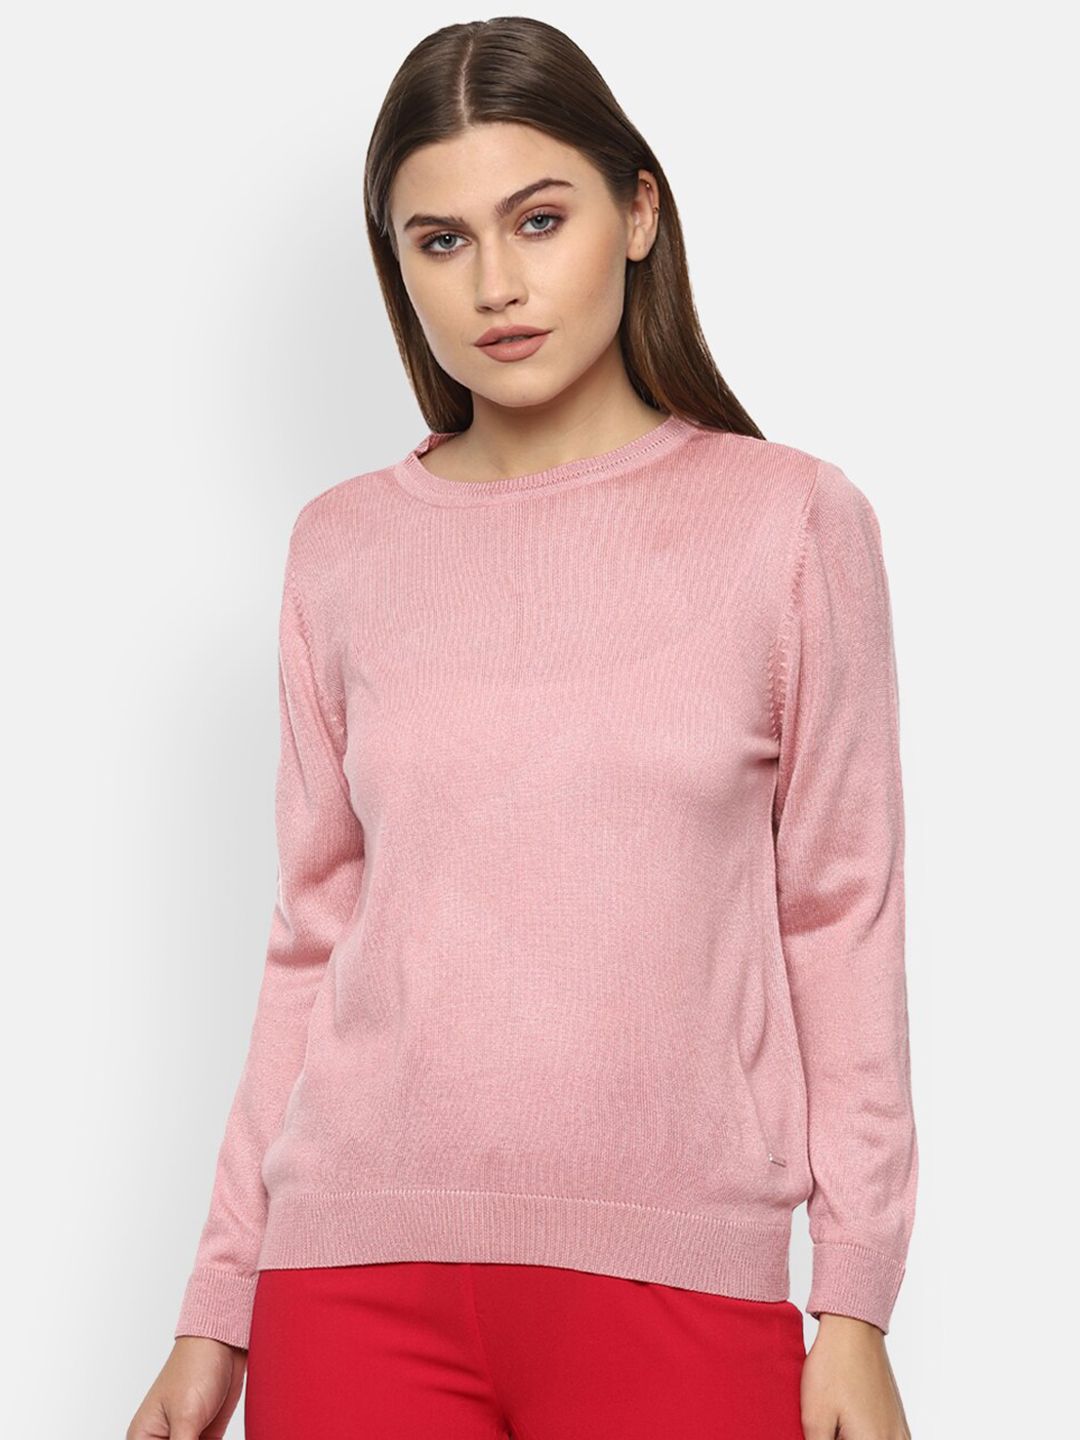 Van Heusen Woman Women Pink Sweater Vest Price in India